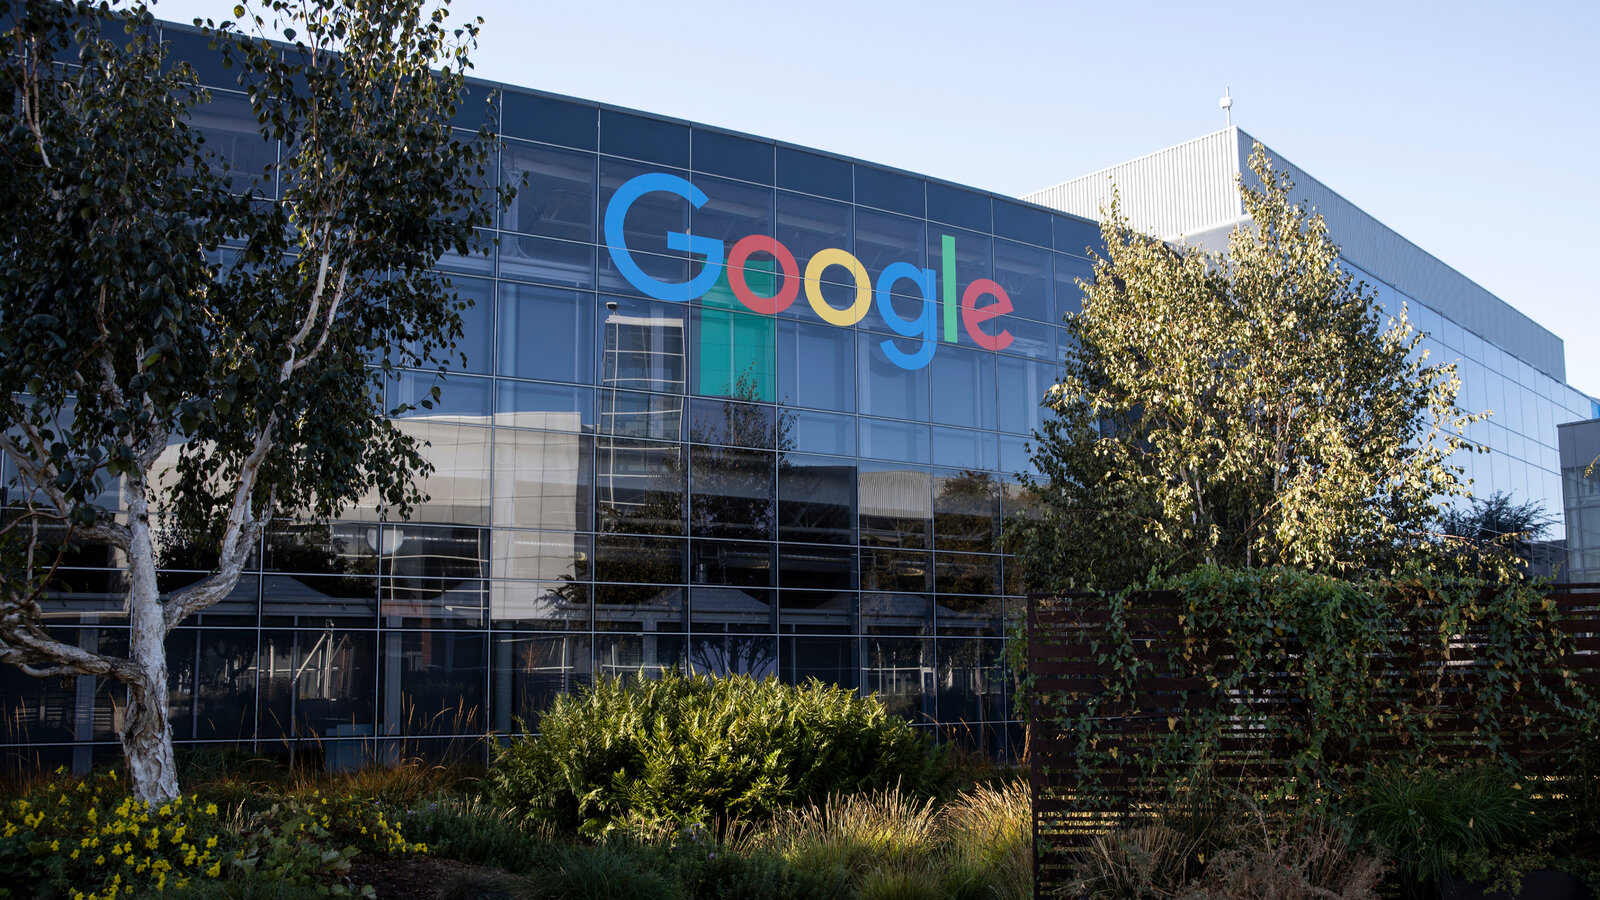 महिला कर्मचारियों के साथ भेदभाव करना Google को पड़ा भारी, अब देने पड़ेंगे 118 मिलियन डॉलर